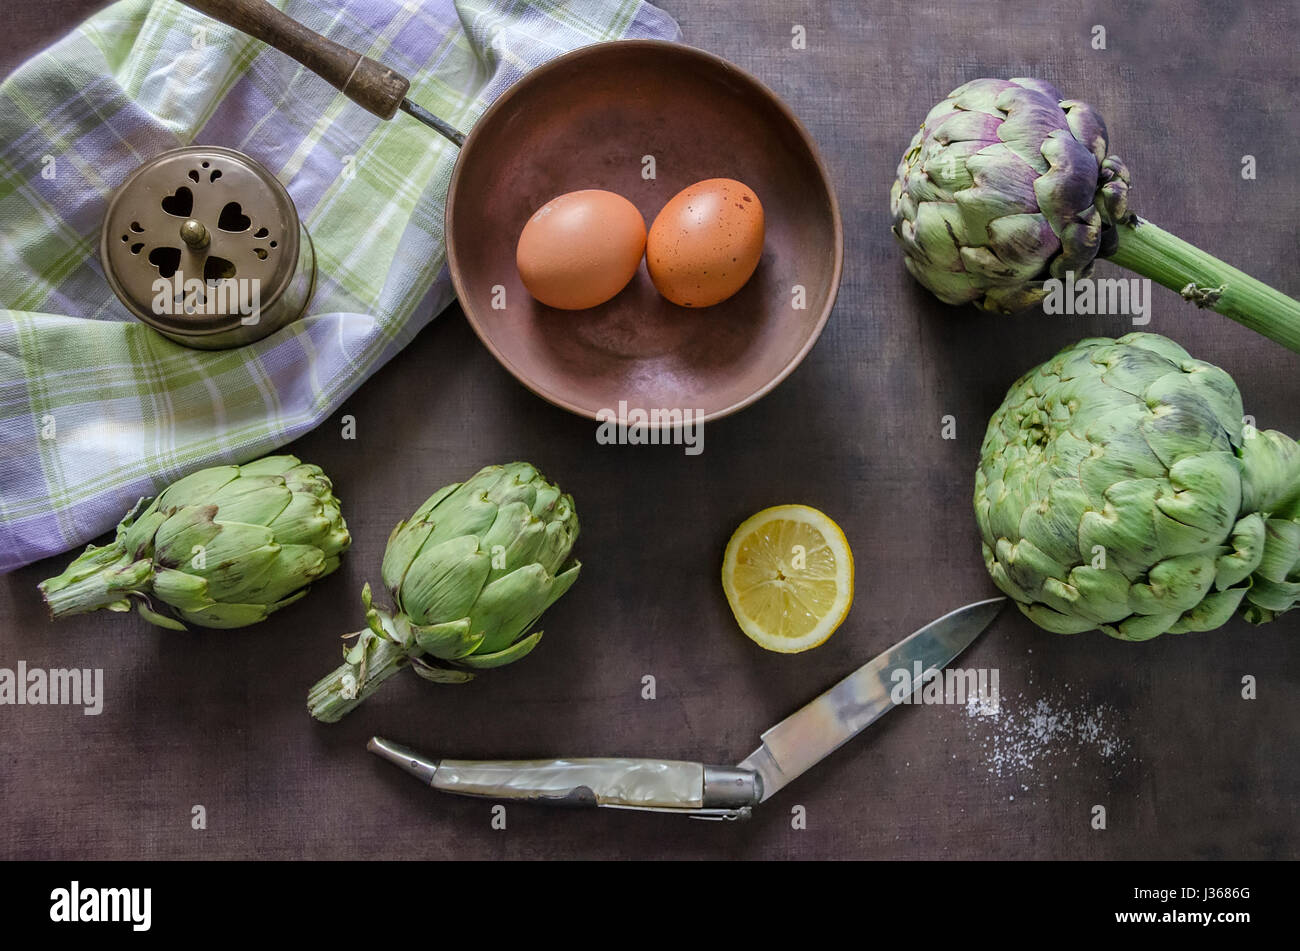 Artichokes, lemon and eggs Stock Photo